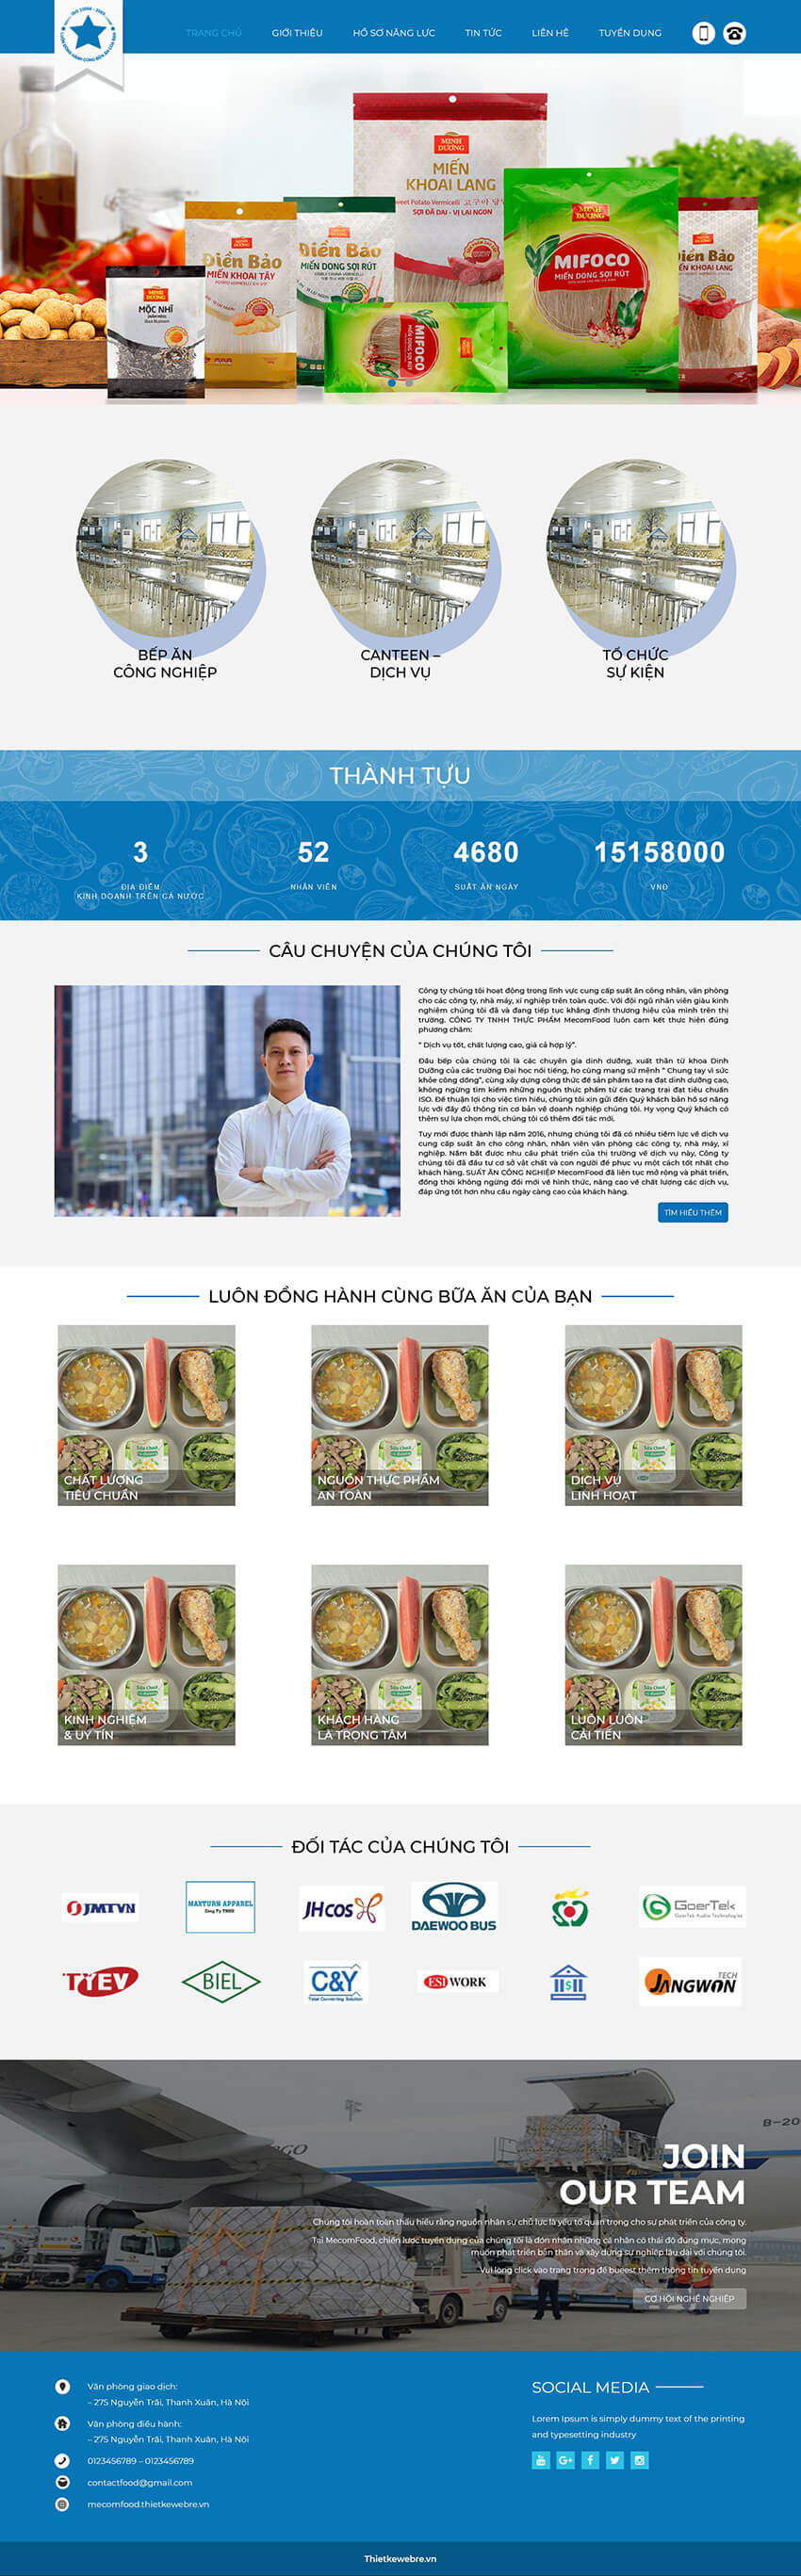 Thiết kế website doanh nghiệp thực phẩm MecomFood